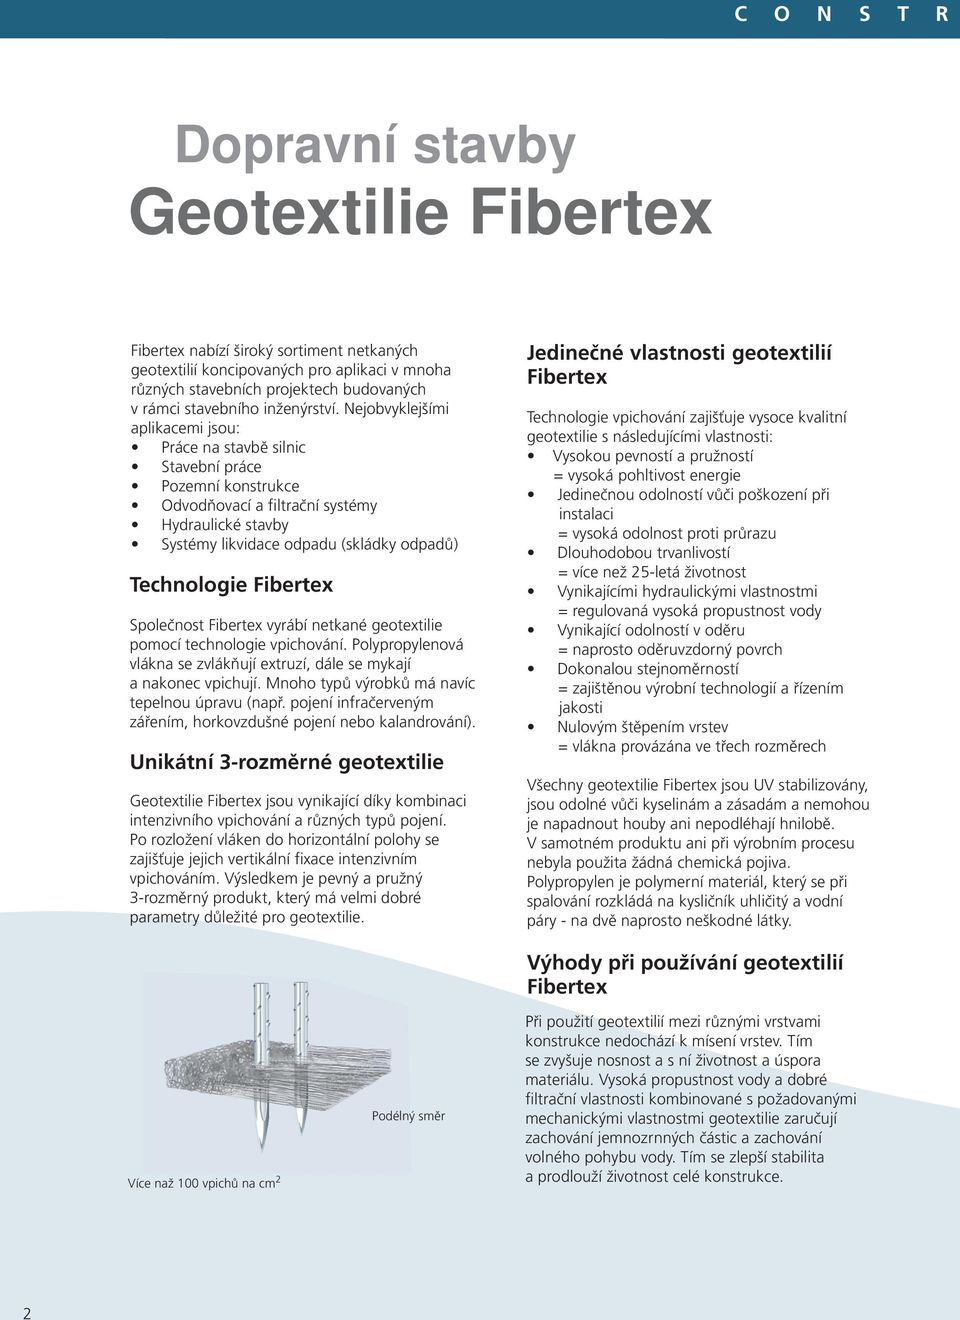 Fibertex Společnost Fibertex vyrábí netkané geotextilie pomocí technologie vpichování. Polypropylenová vlákna se zvlákňují extruzí, dále se mykají a nakonec vpichují.